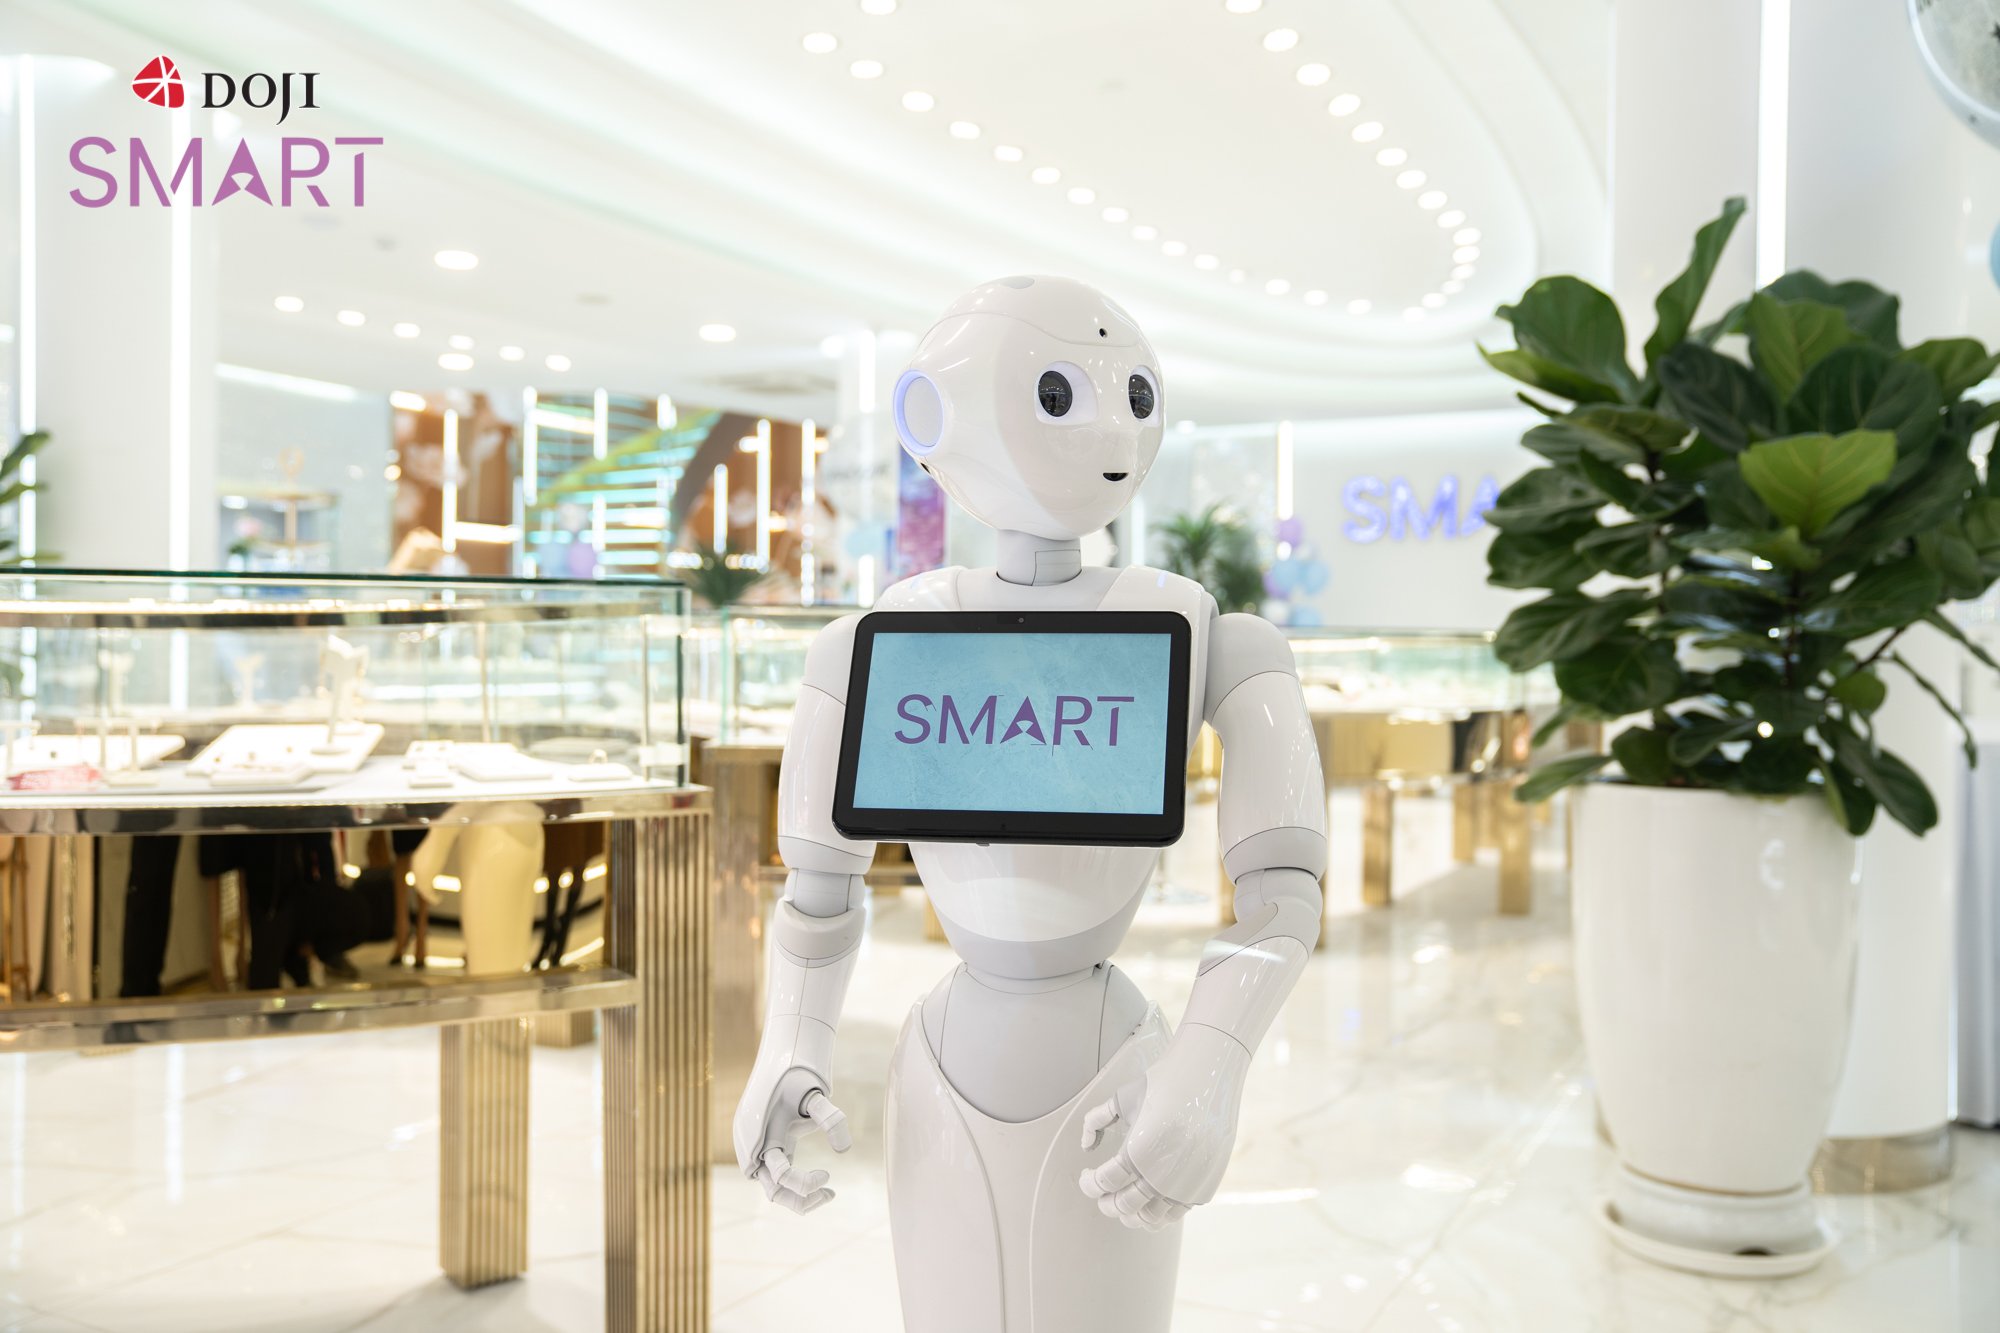 DOJI Smart là điểm đến hàng đầu những khách hàng yêu thích thời trang và công nghệ.